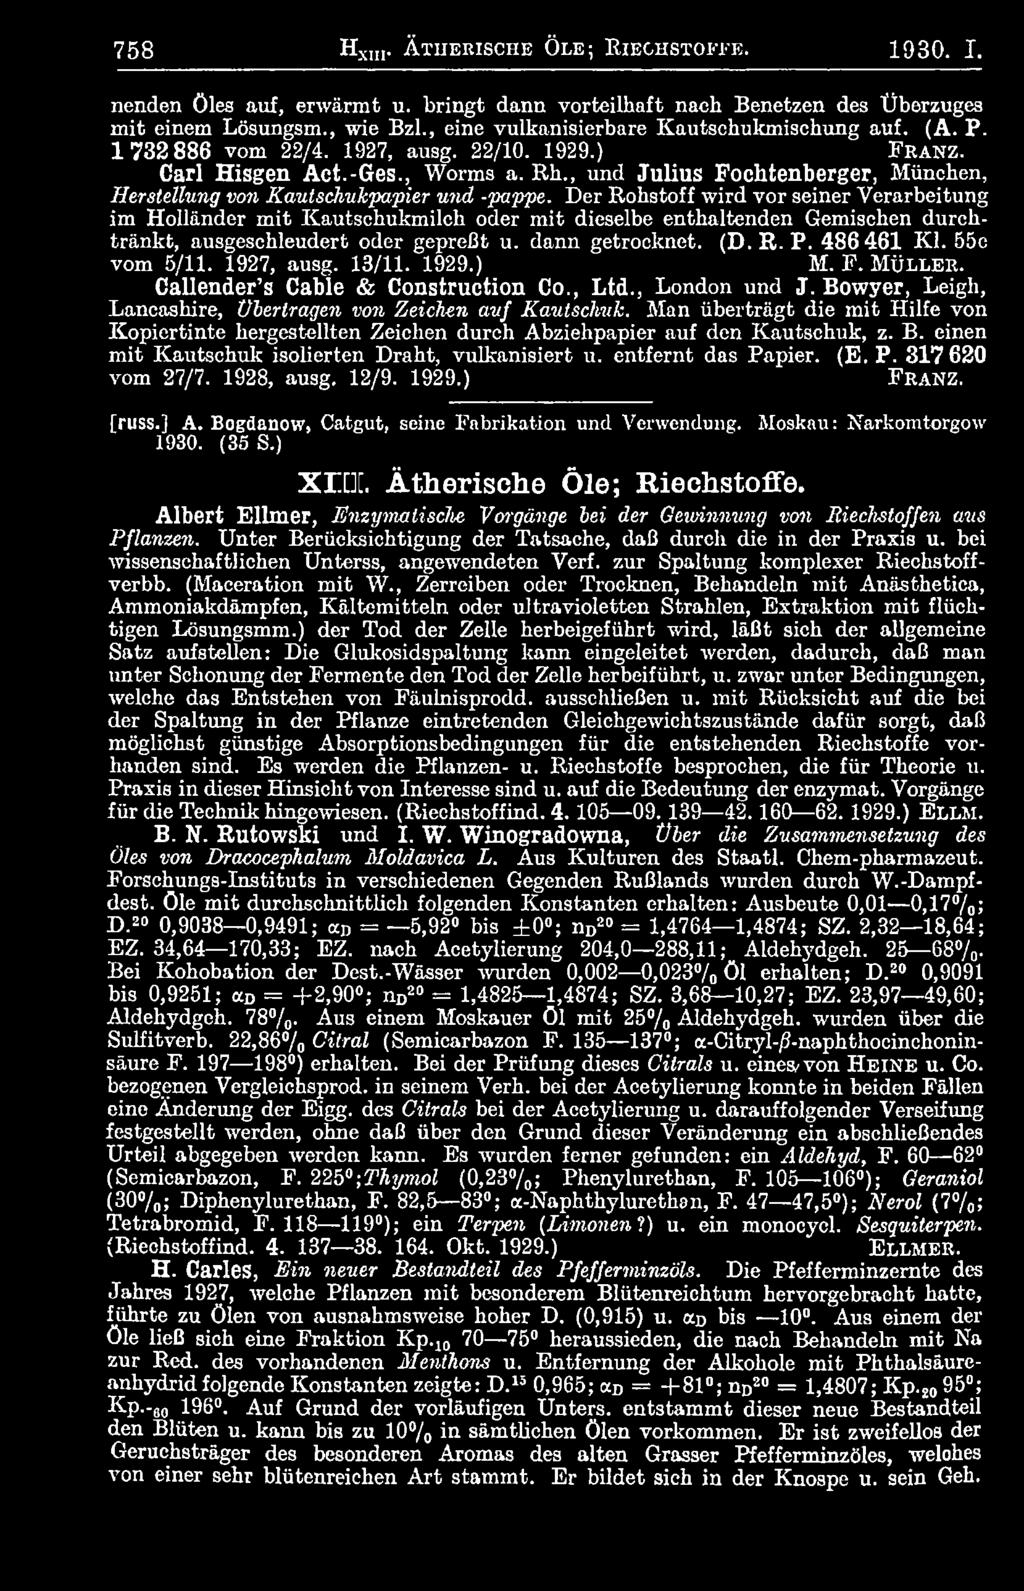 55c vom 5/11. 1927, ausg. 13/11. 1929.) M. F. Mü lle r. Callender s Cable & Construction Co., Ltd., London und J. Bowyer, Leigh, Lancashire, Übertragen von Zeichen auf Kautschuk.